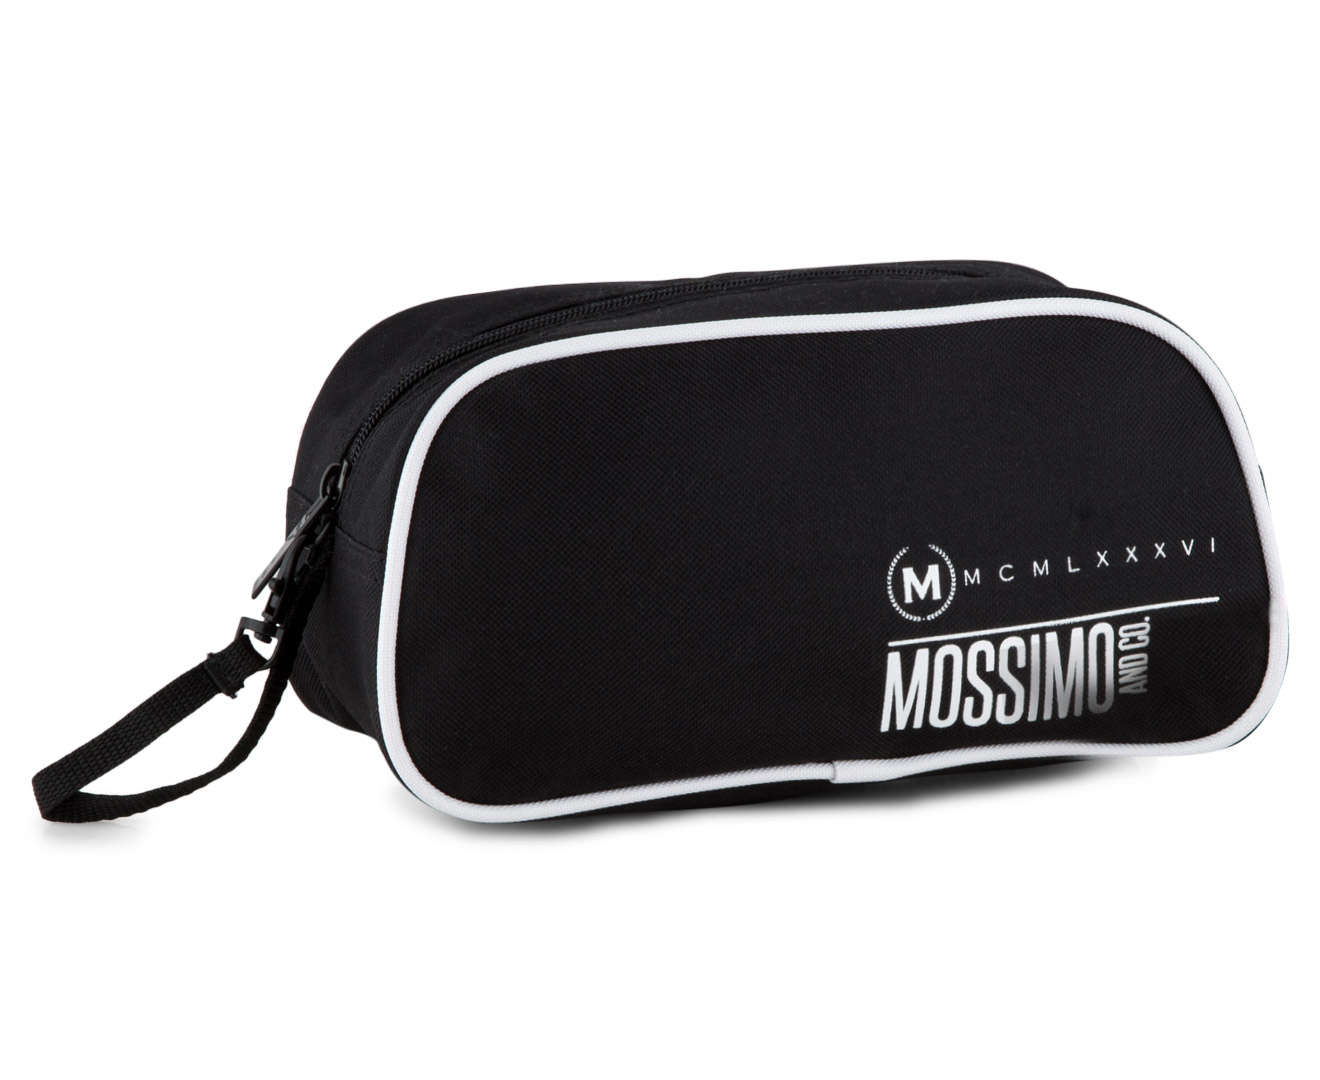 Mossimo Emblem Toiletry Bag - Black